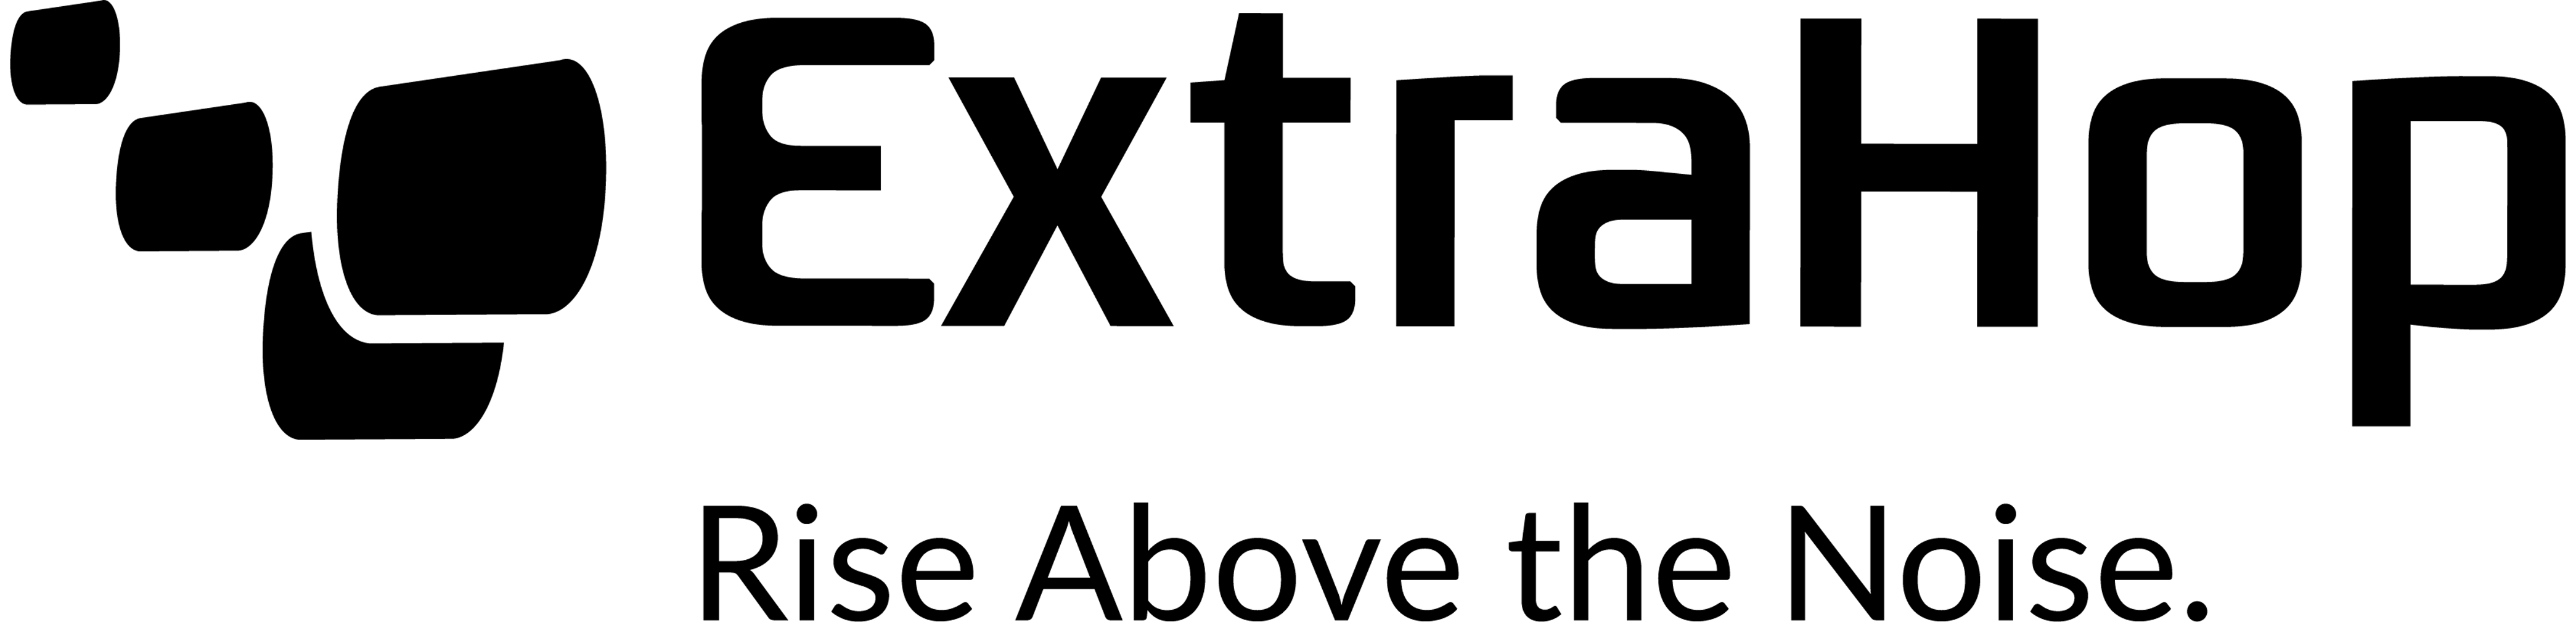 Partner logo for ExtraHop